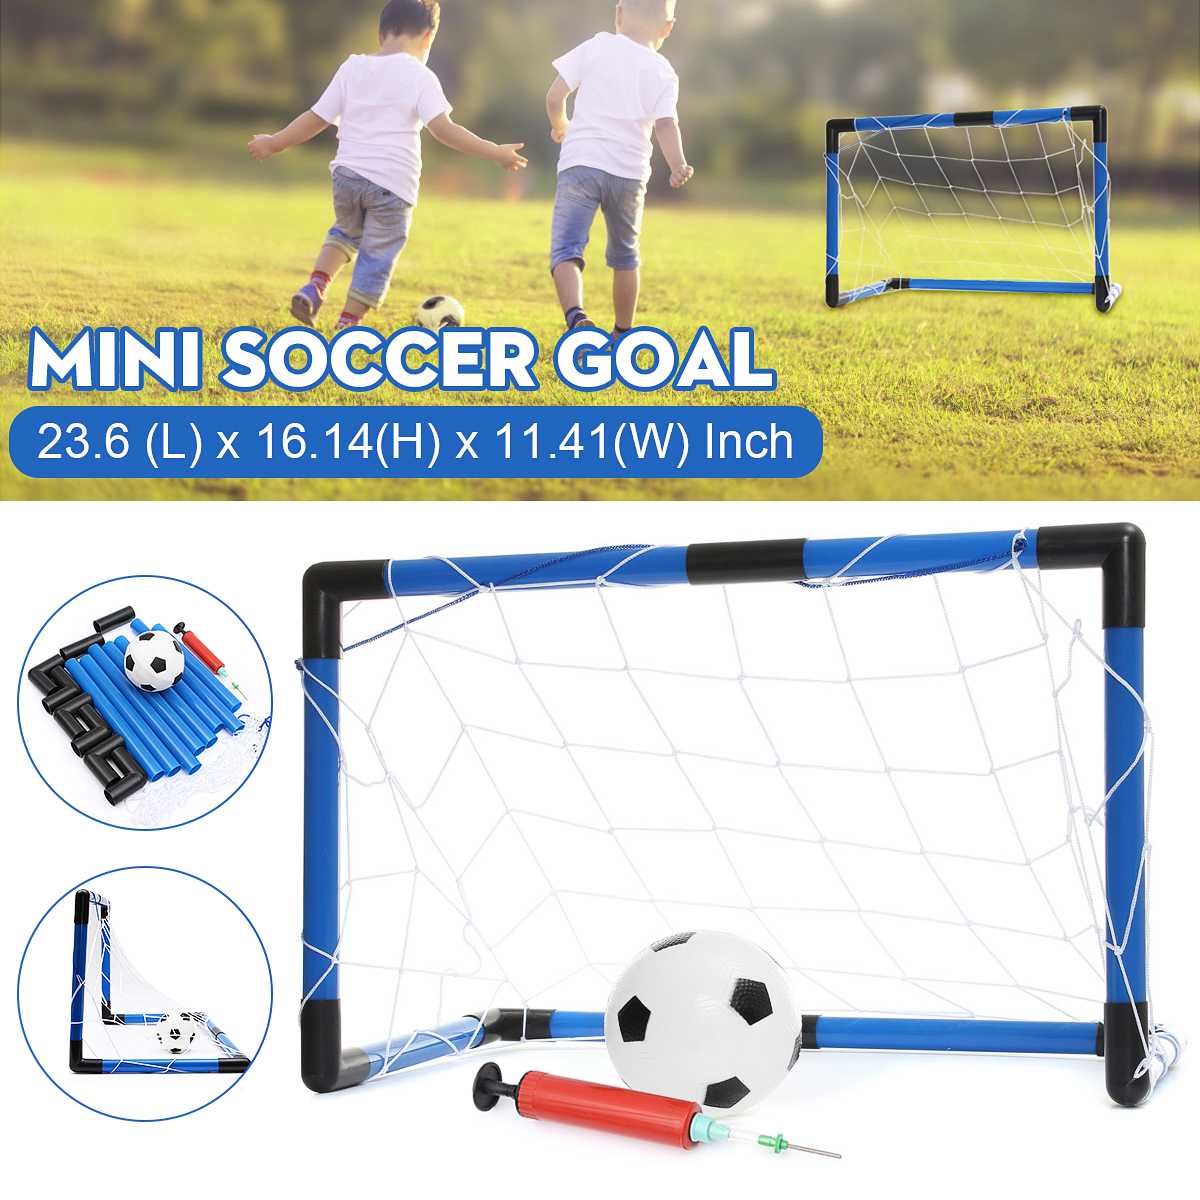 Mini Vouwen Voetbal Voetbal Doelpaal Net Set Met Voetbal En Pomp Kids Sport Indoor Outdoor Home Game Speelgoed kind